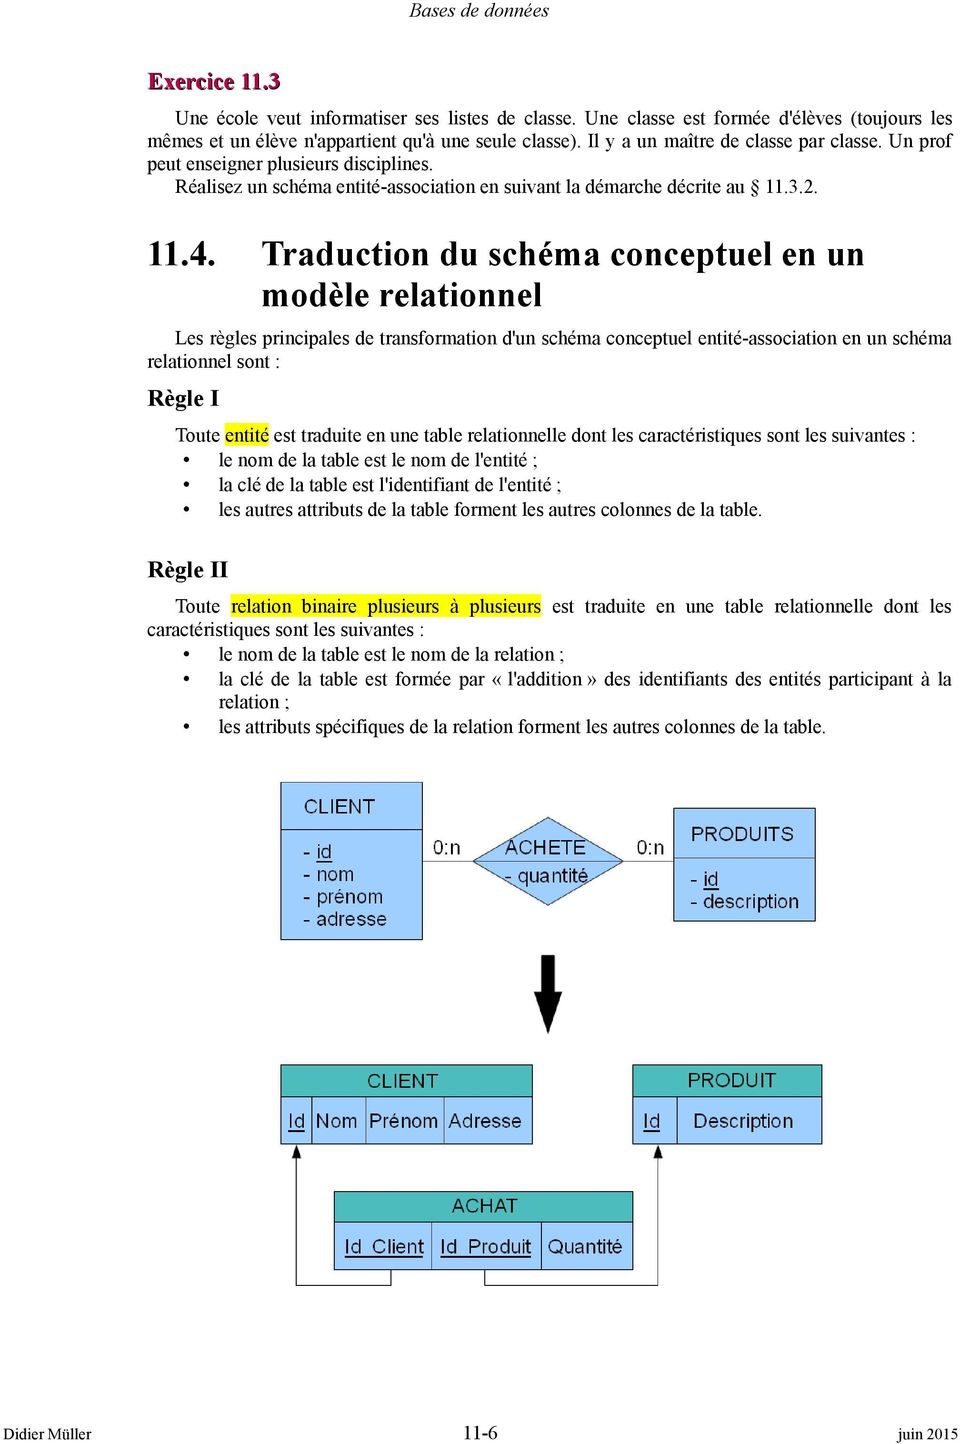 Traduction du schéma conceptuel en un modèle relationnel Les règles principales de transformation d'un schéma conceptuel entité-association en un schéma relationnel sont : Règle I Toute entité est